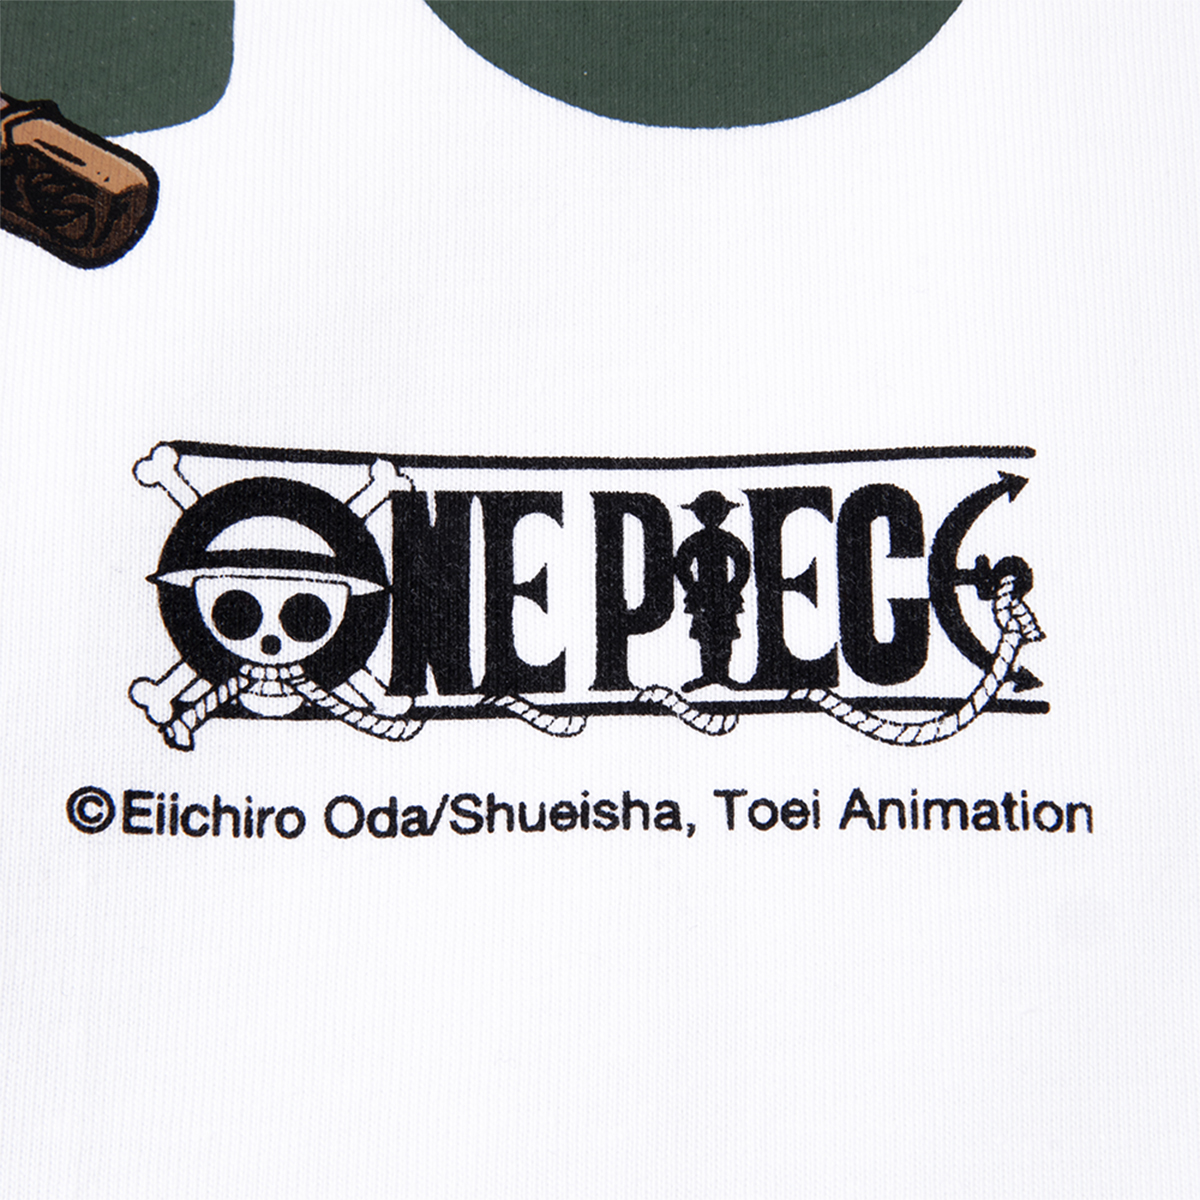 Áo thun DirtyCoins x One Piece Zoro T-Shirt - White